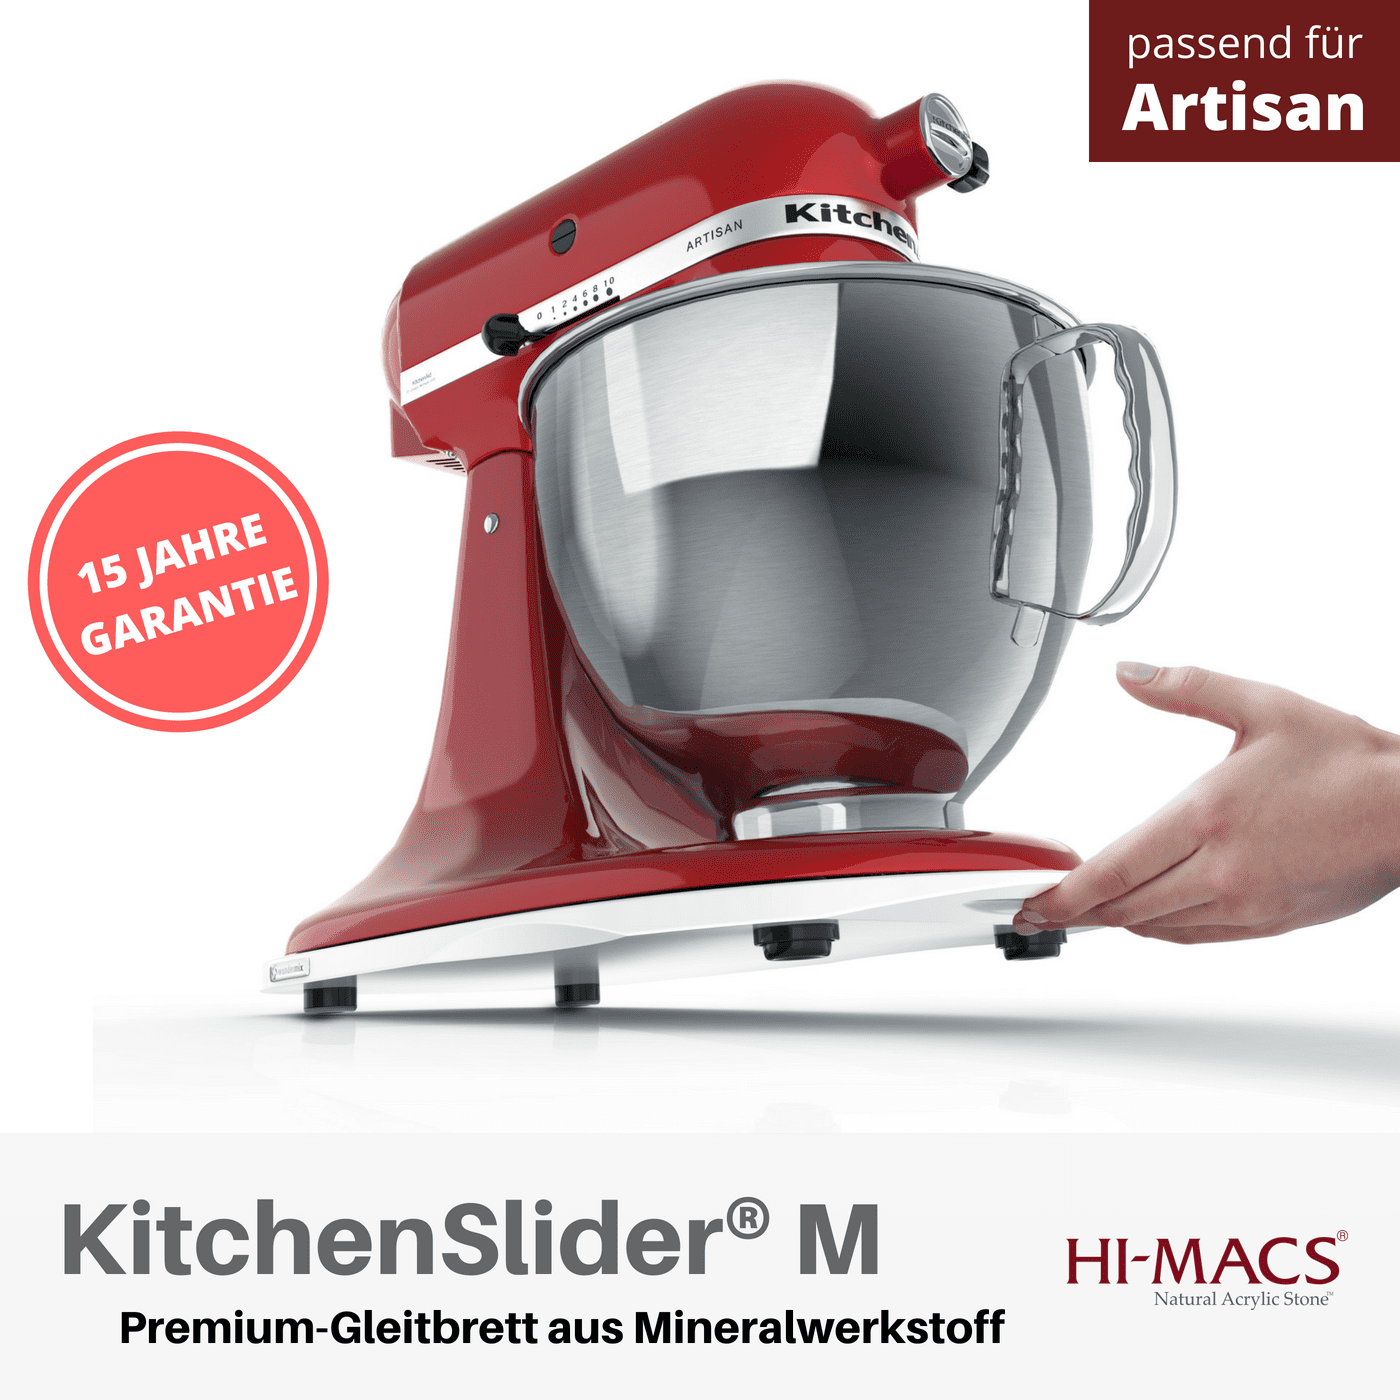 KitchenSlider® M | Alpine White | Gleitbrett für KitchenAid - Wundermix GmbH